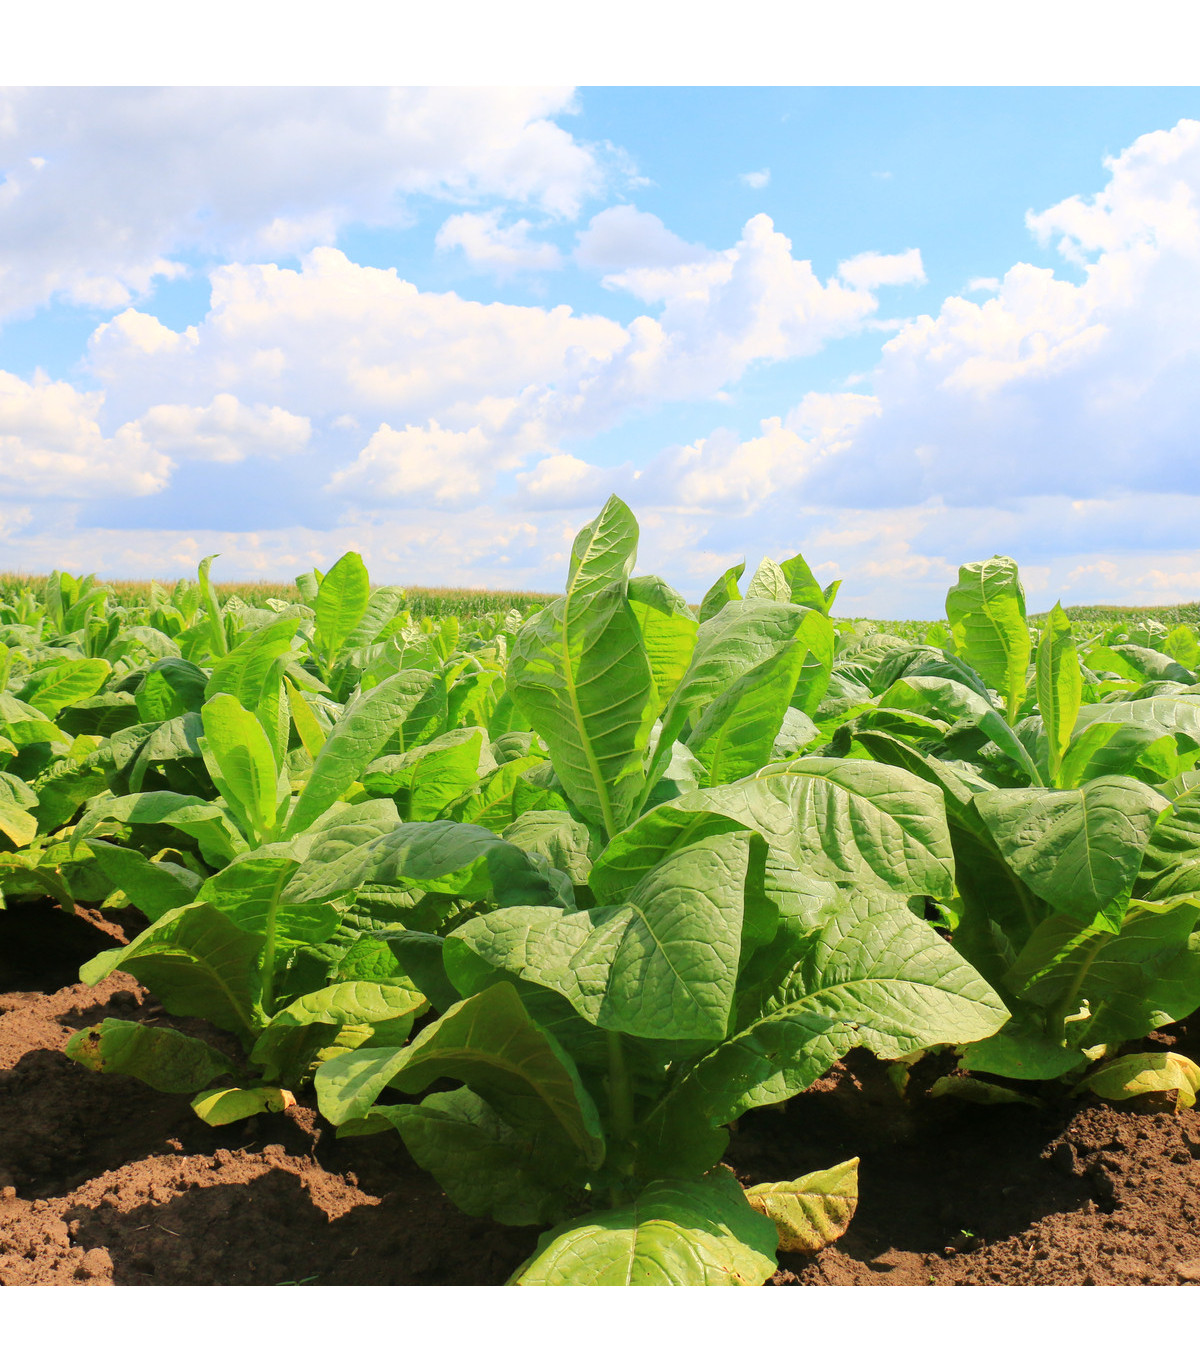 Tabák Kentucky - rostlina Nicotiana tabacum - semena tabáku - 20 ks